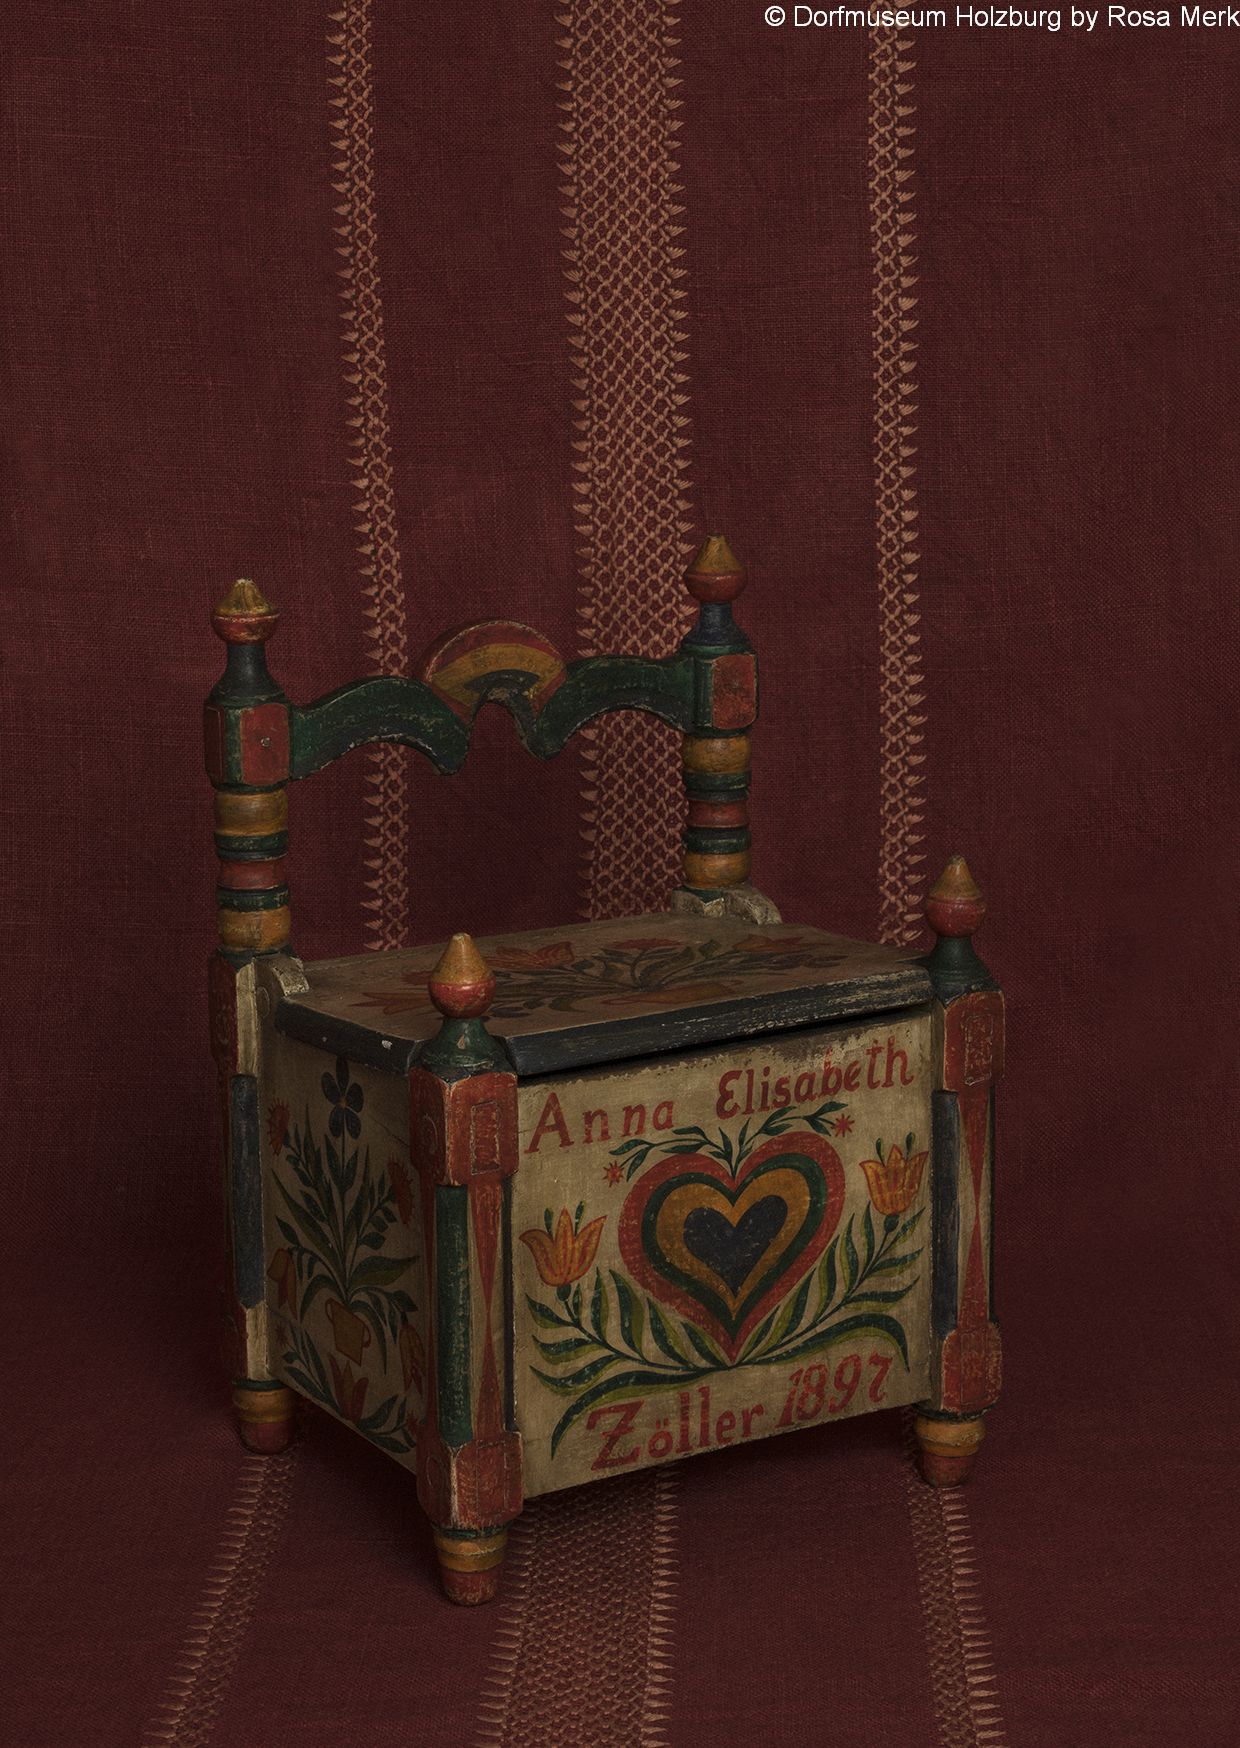 Salzkasten, 1892, Holz, bezeichnet „Anna Elisabeth Zöller 1892“, farbige Bemalung mit Herz und Tulpenmotiven